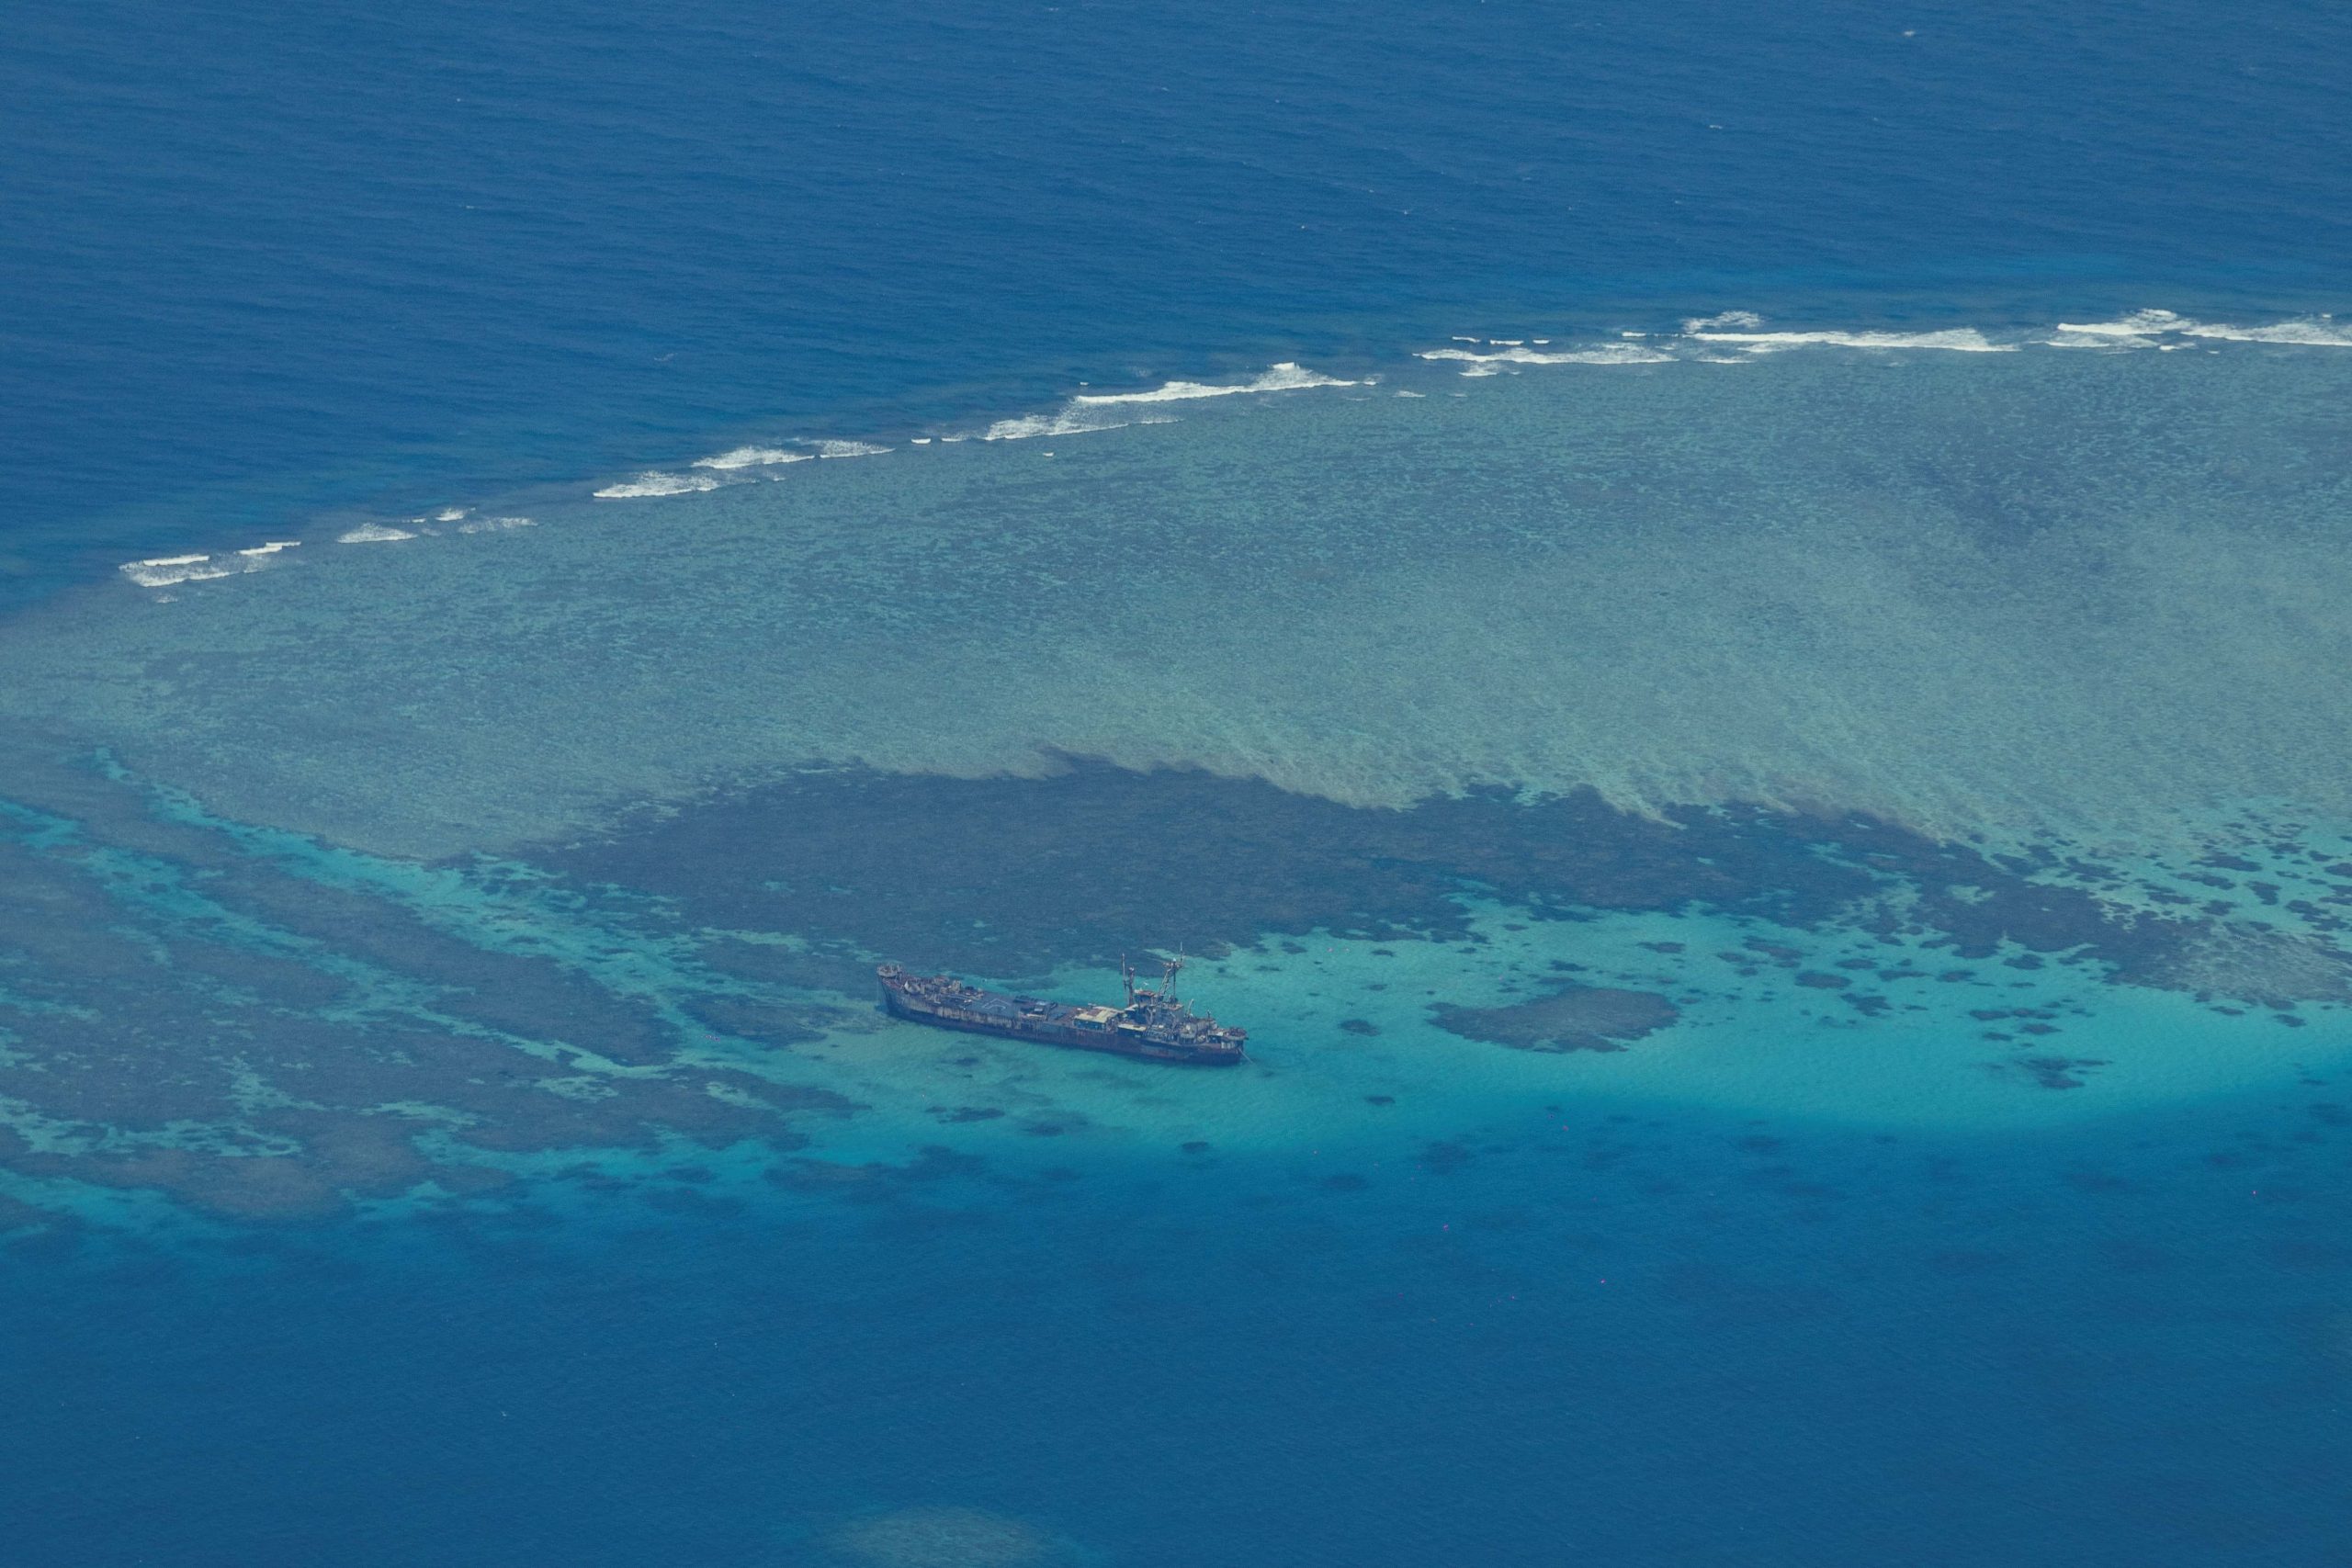 菲民用船到岸补给  中国指控“非法停靠”仁爱礁